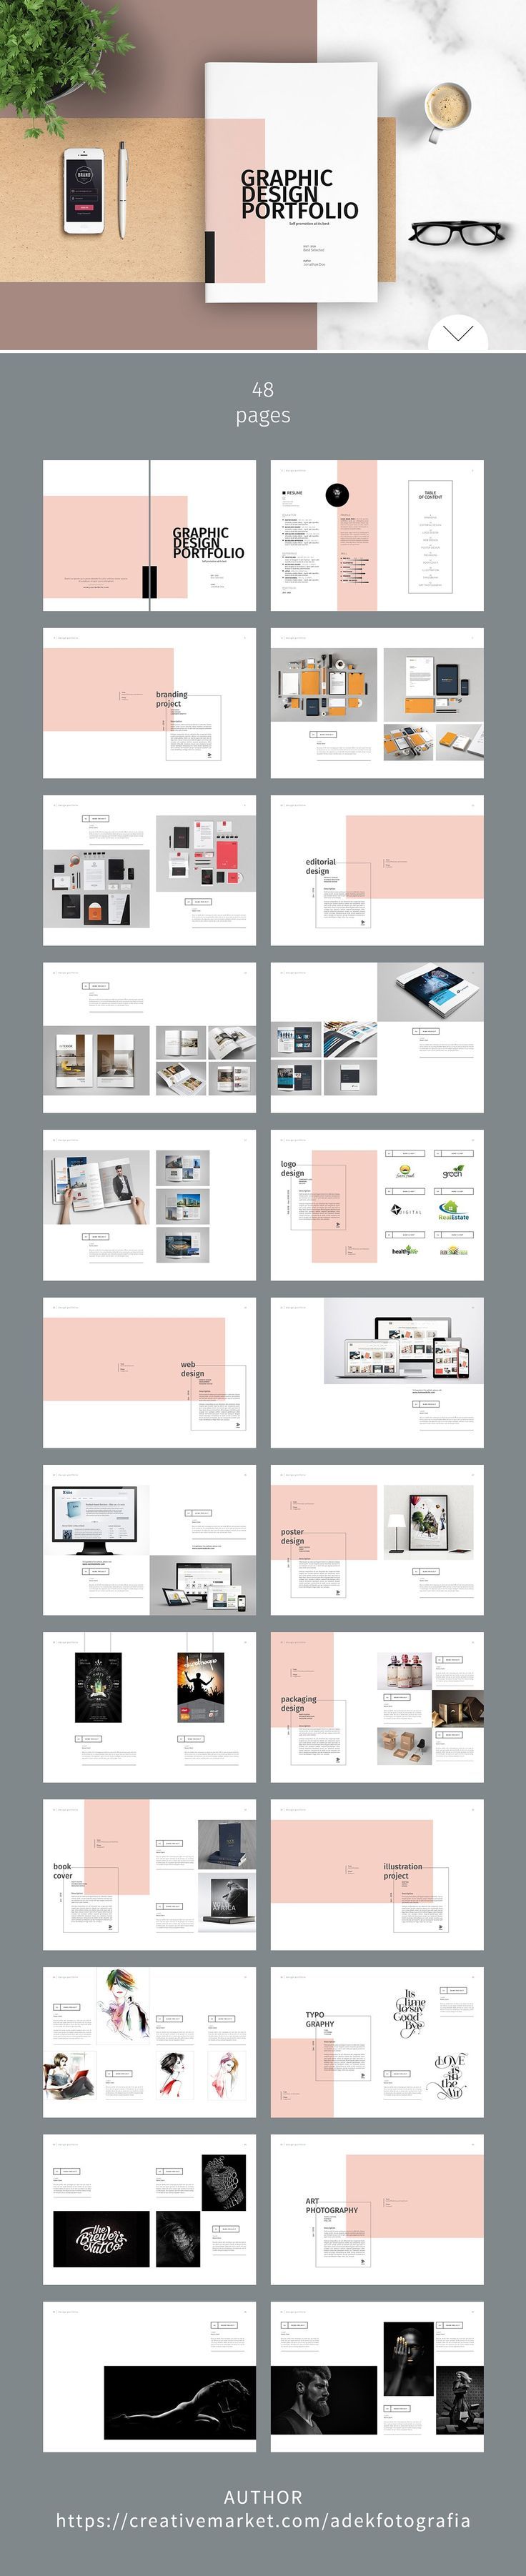 Graphic design portfolio samples